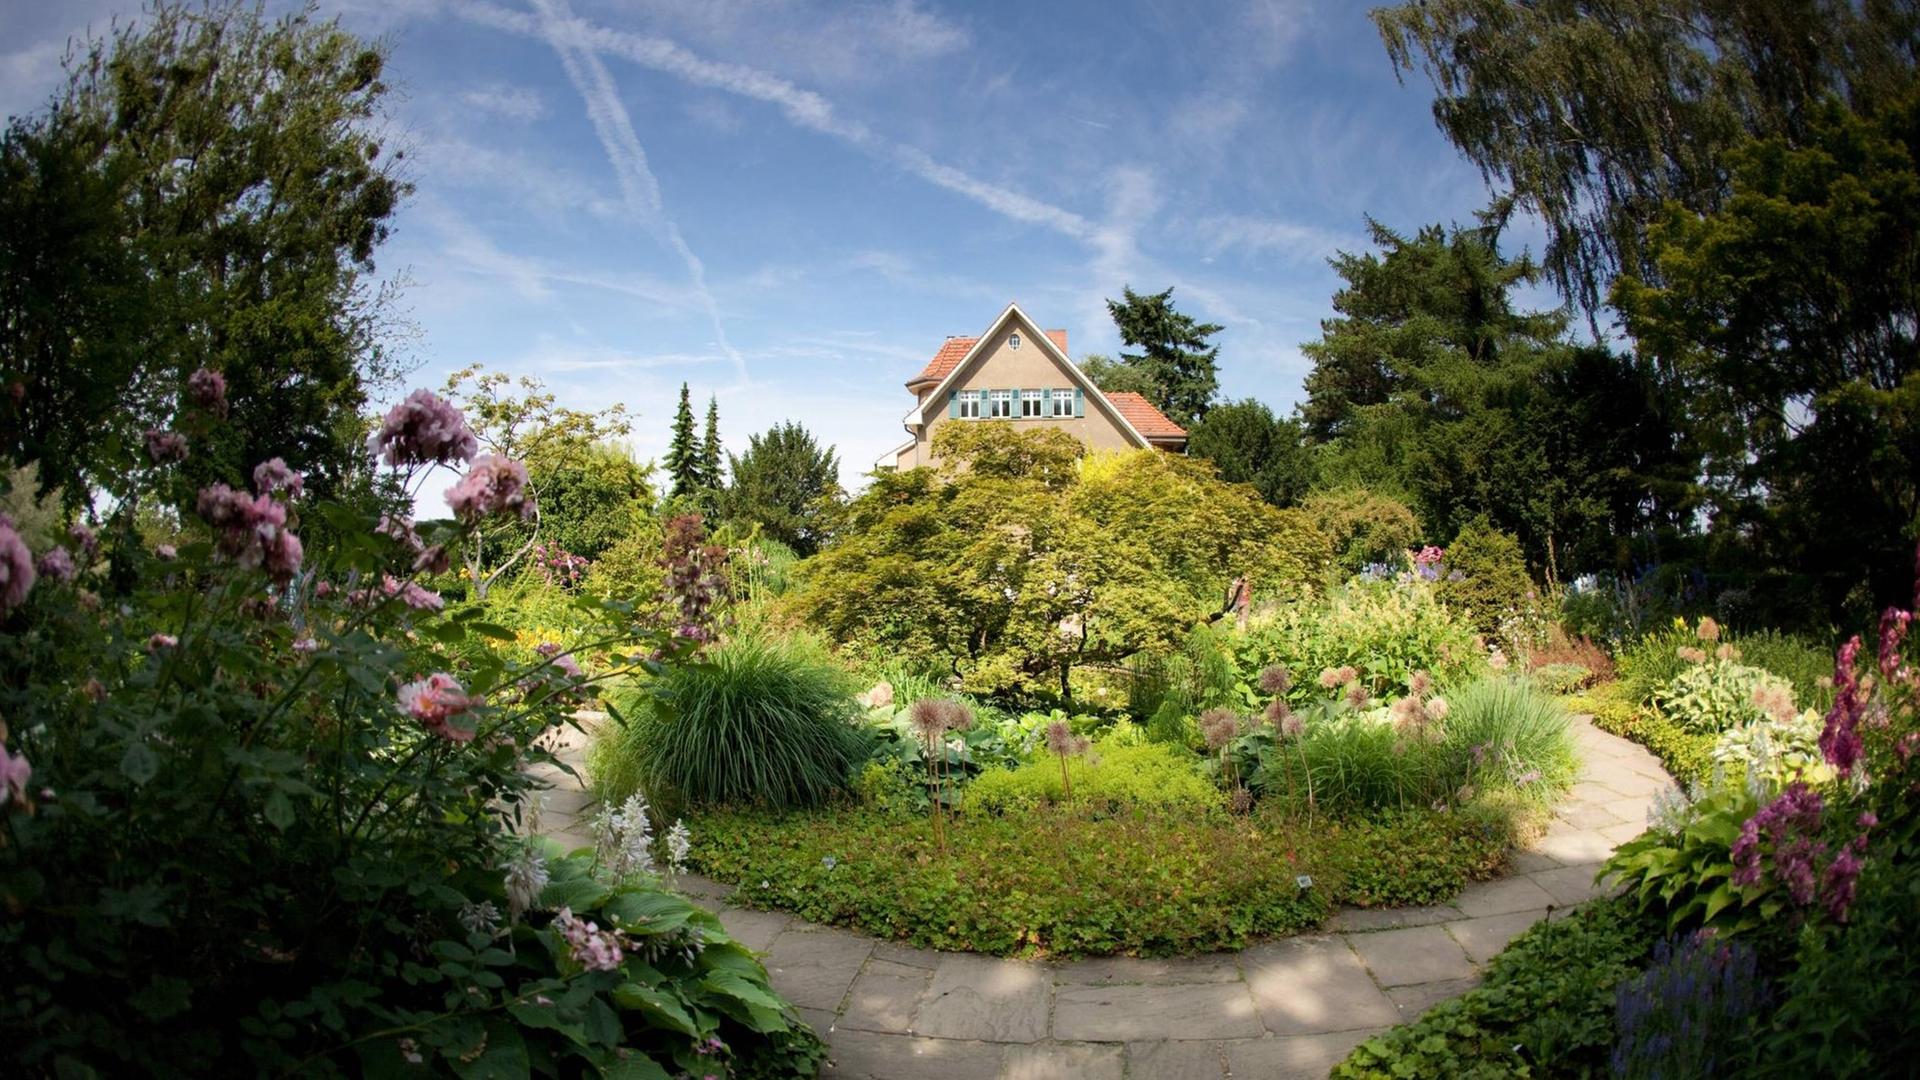 Öffentlich zugänglicher Garten von Karl Foerster in Potsdam-Bornim. Ein Haus mitten in einem Garten.